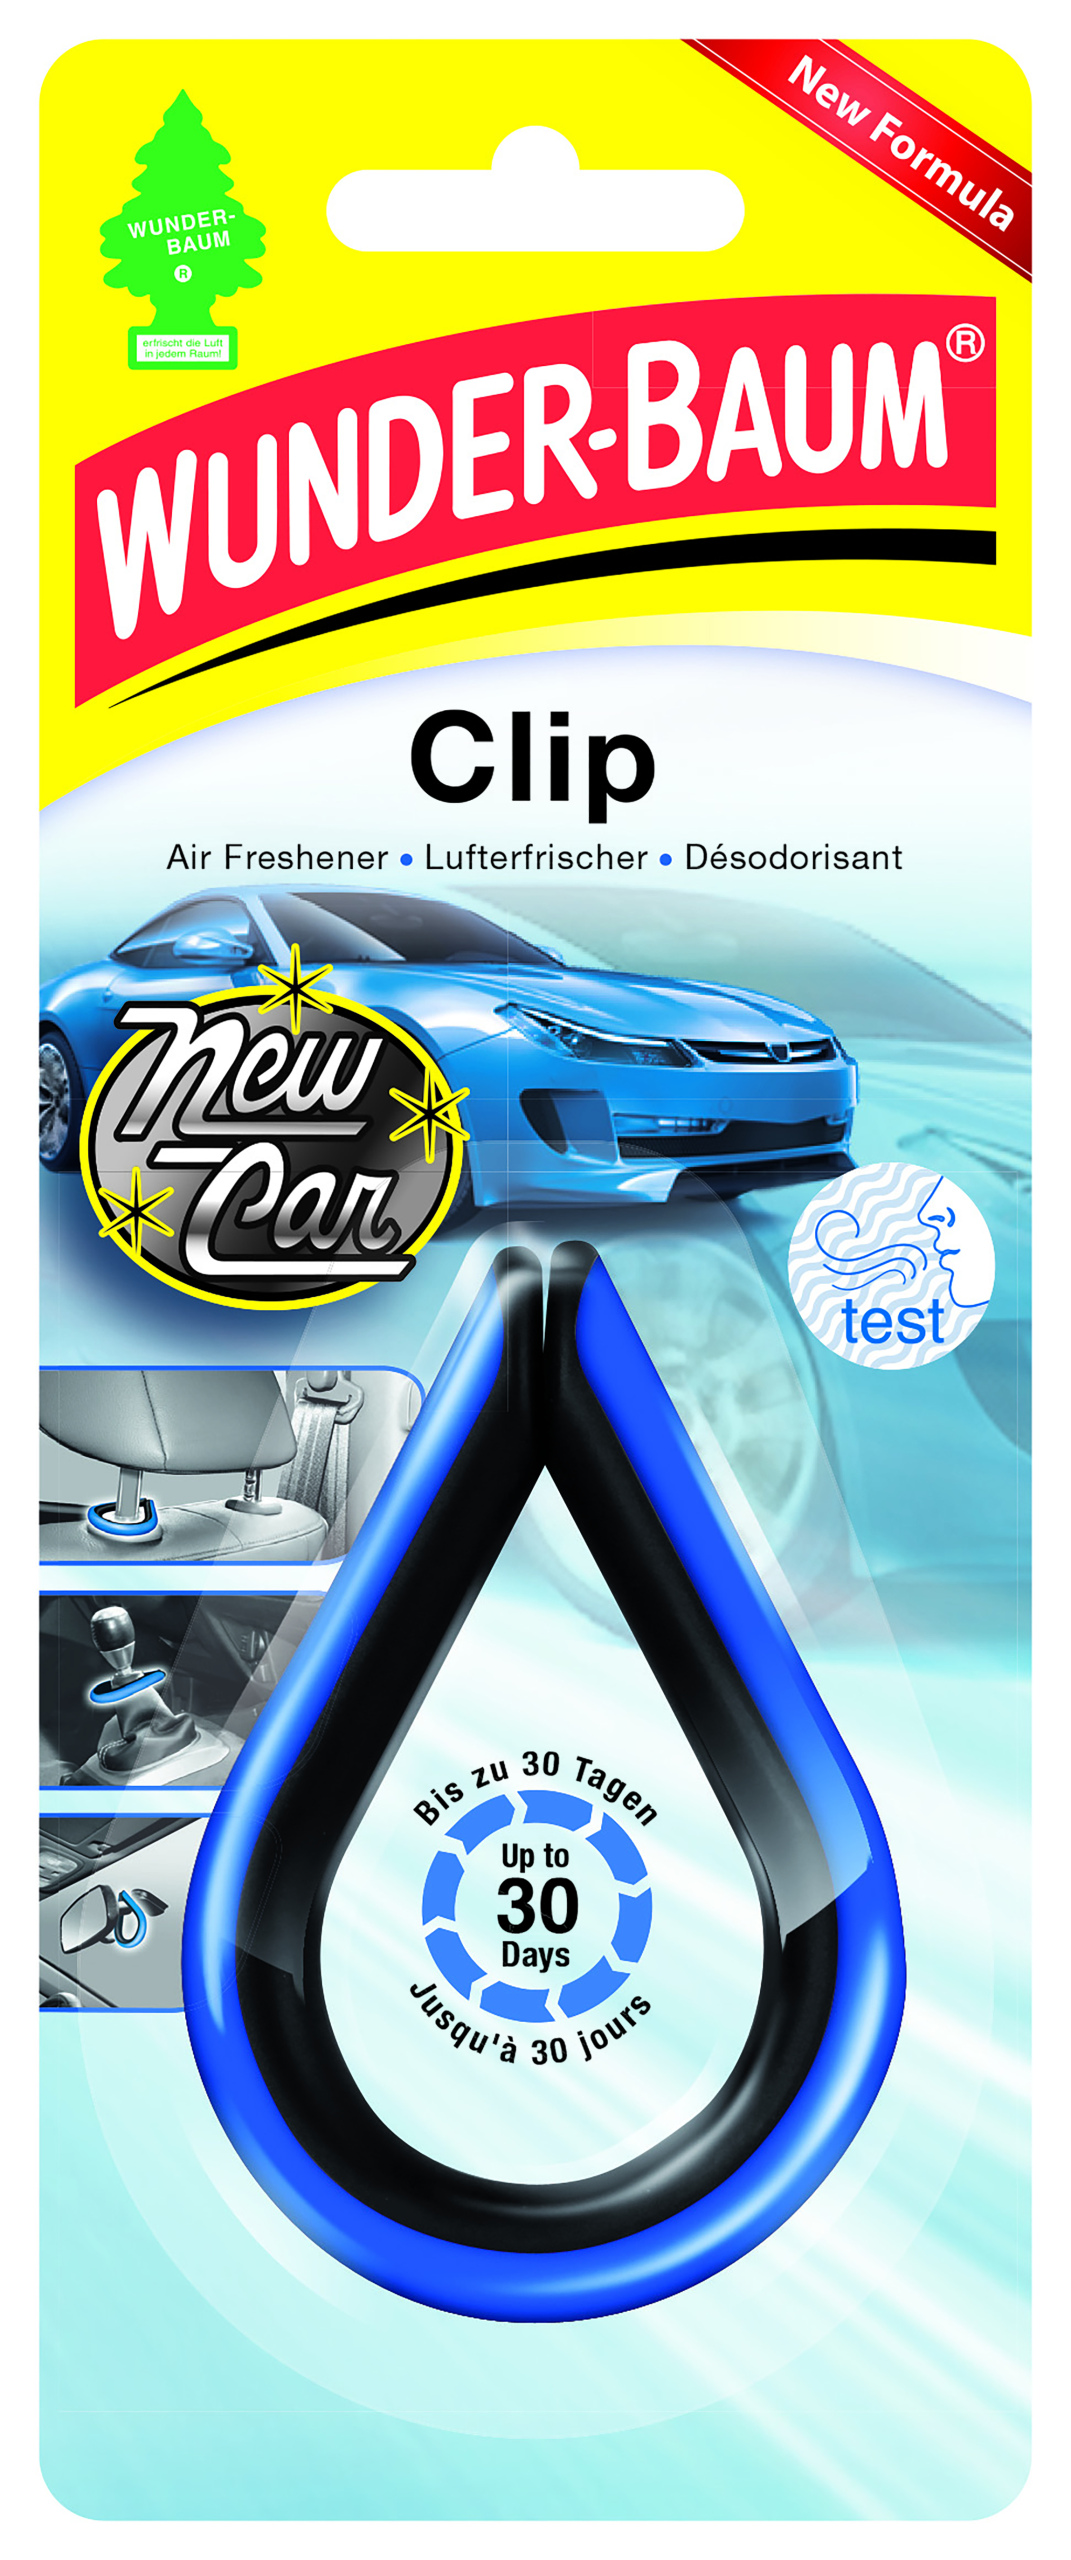 Wunder-baum Clip New Car - porównaj ceny 